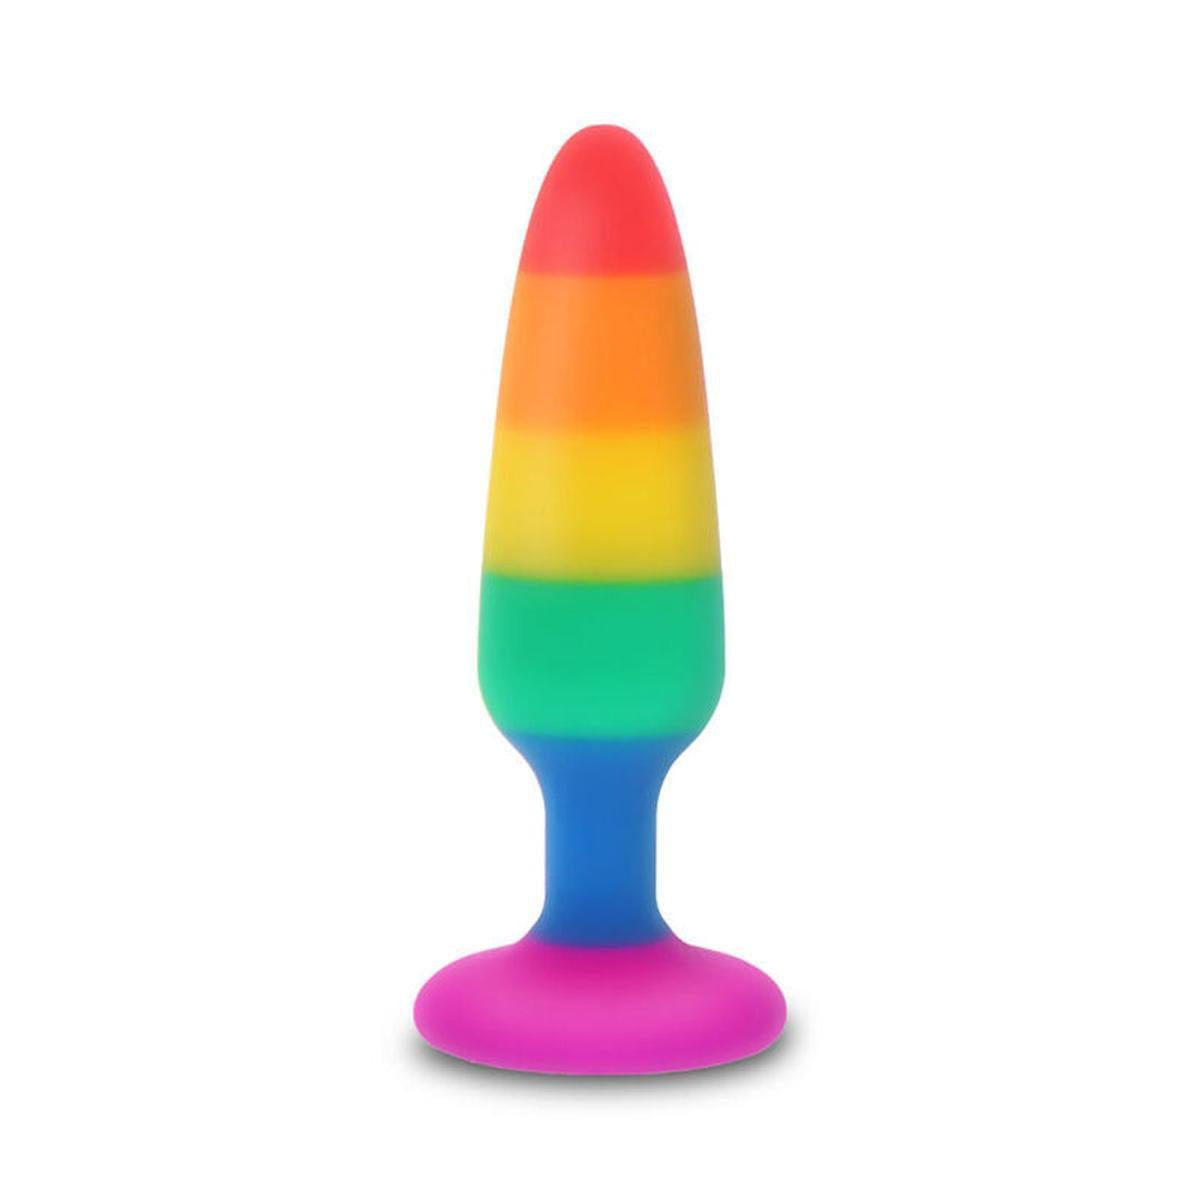 Analplug Twink im LGBT Flaggen Design